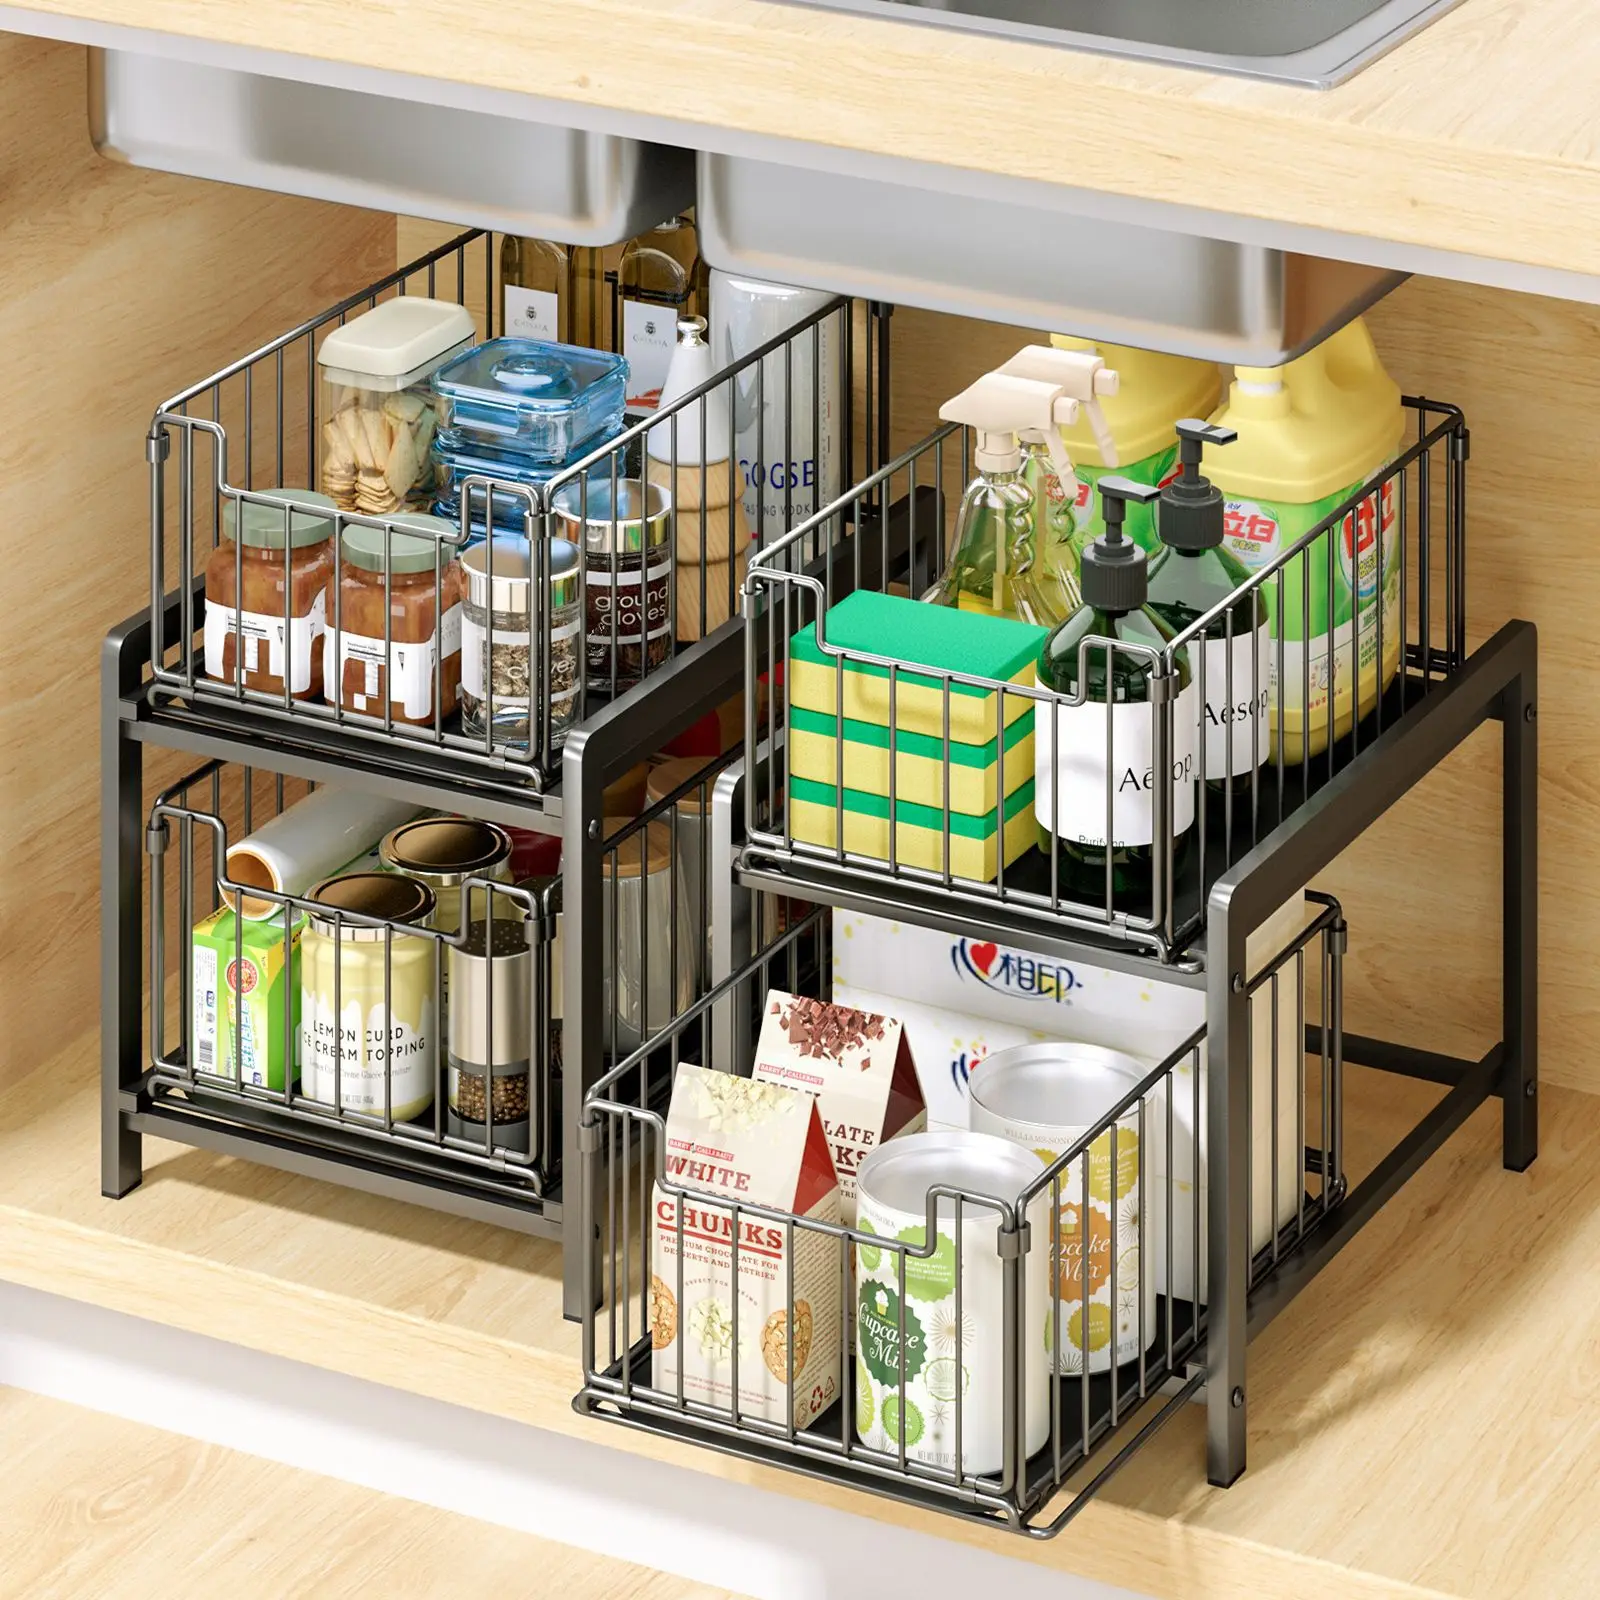 Multi-purpose 2 Tier Sliding Cabinet Basket Under Sink Organizer Storage  Rack With Drawers For Home Bathroom Kitchen Accessori - AliExpress